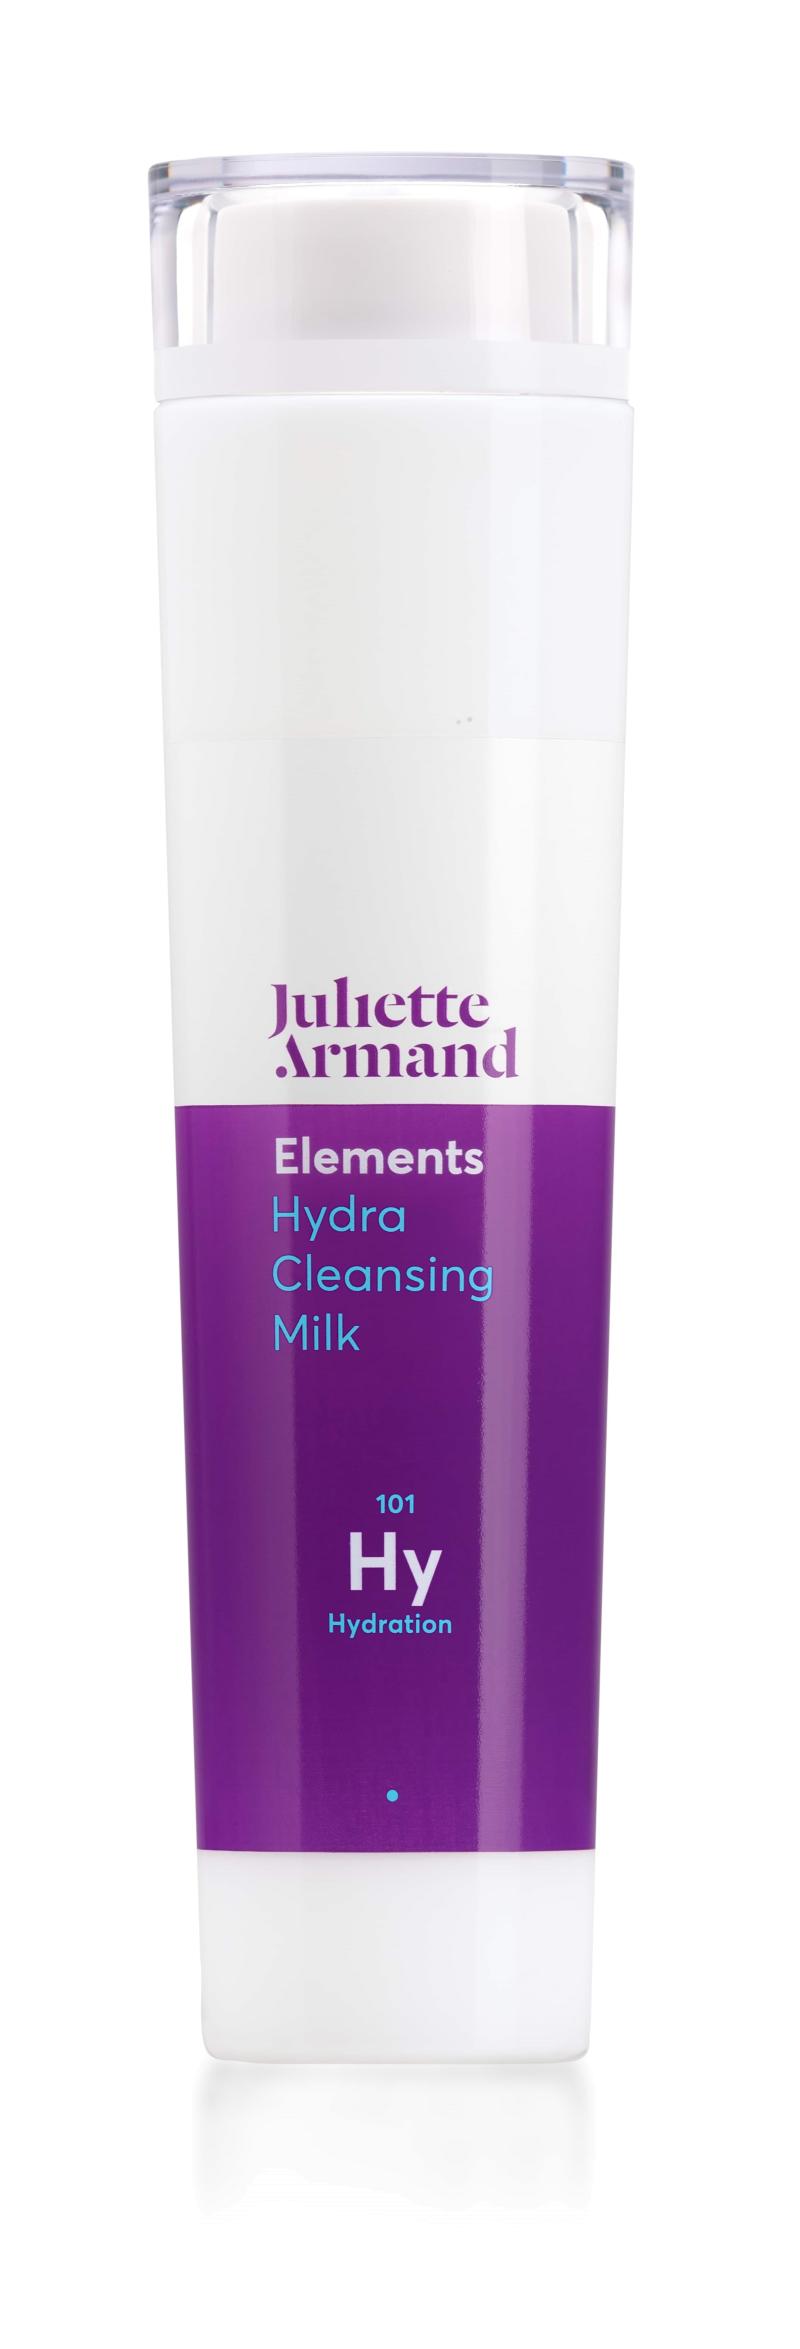 Hydra Cleansing Milk Hy101 -  Juliette Armand 